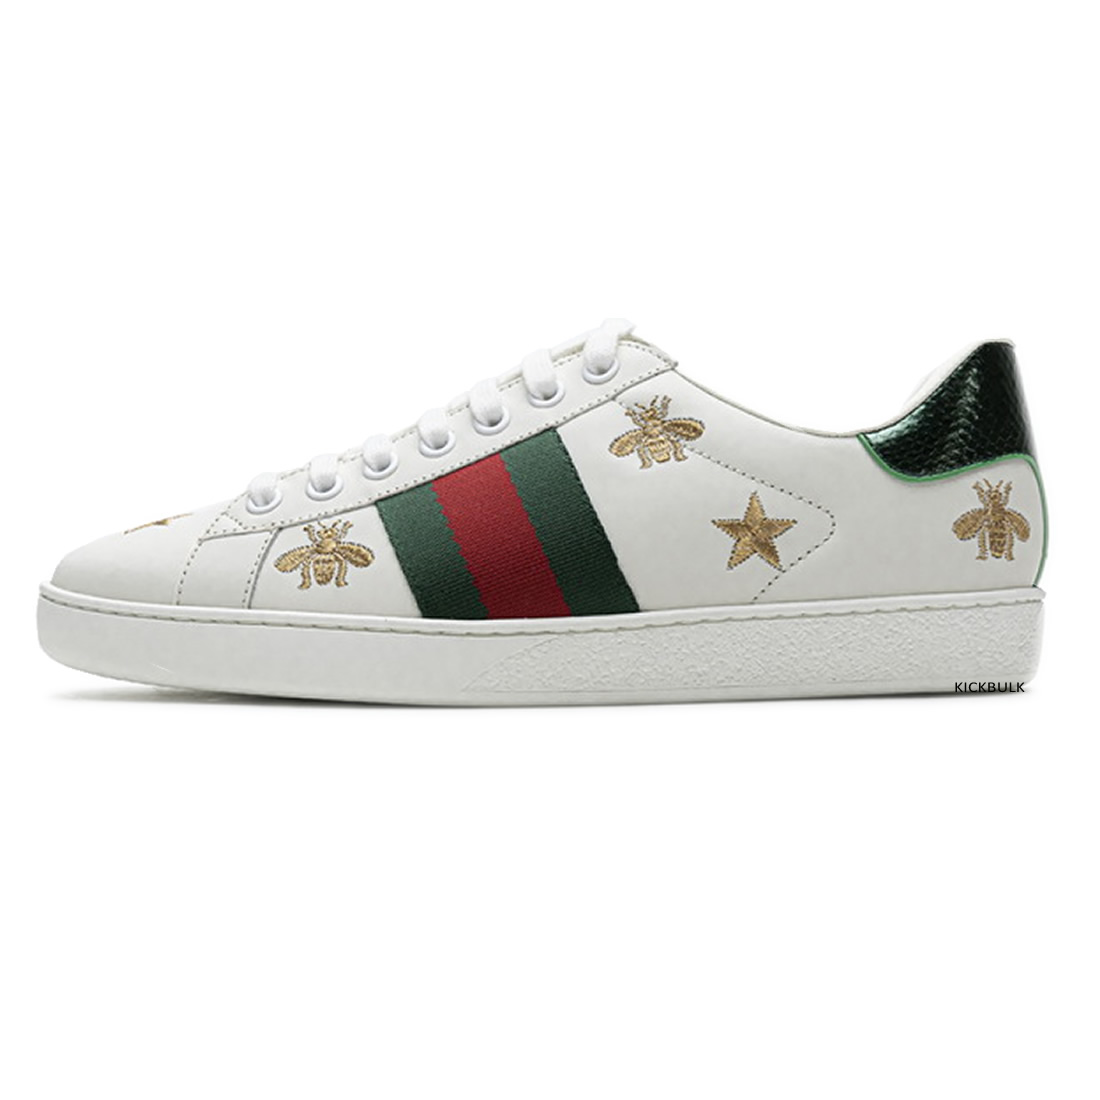 Gucci Stars Sneakers 429446a39gq9085 1 - www.kickbulk.cc